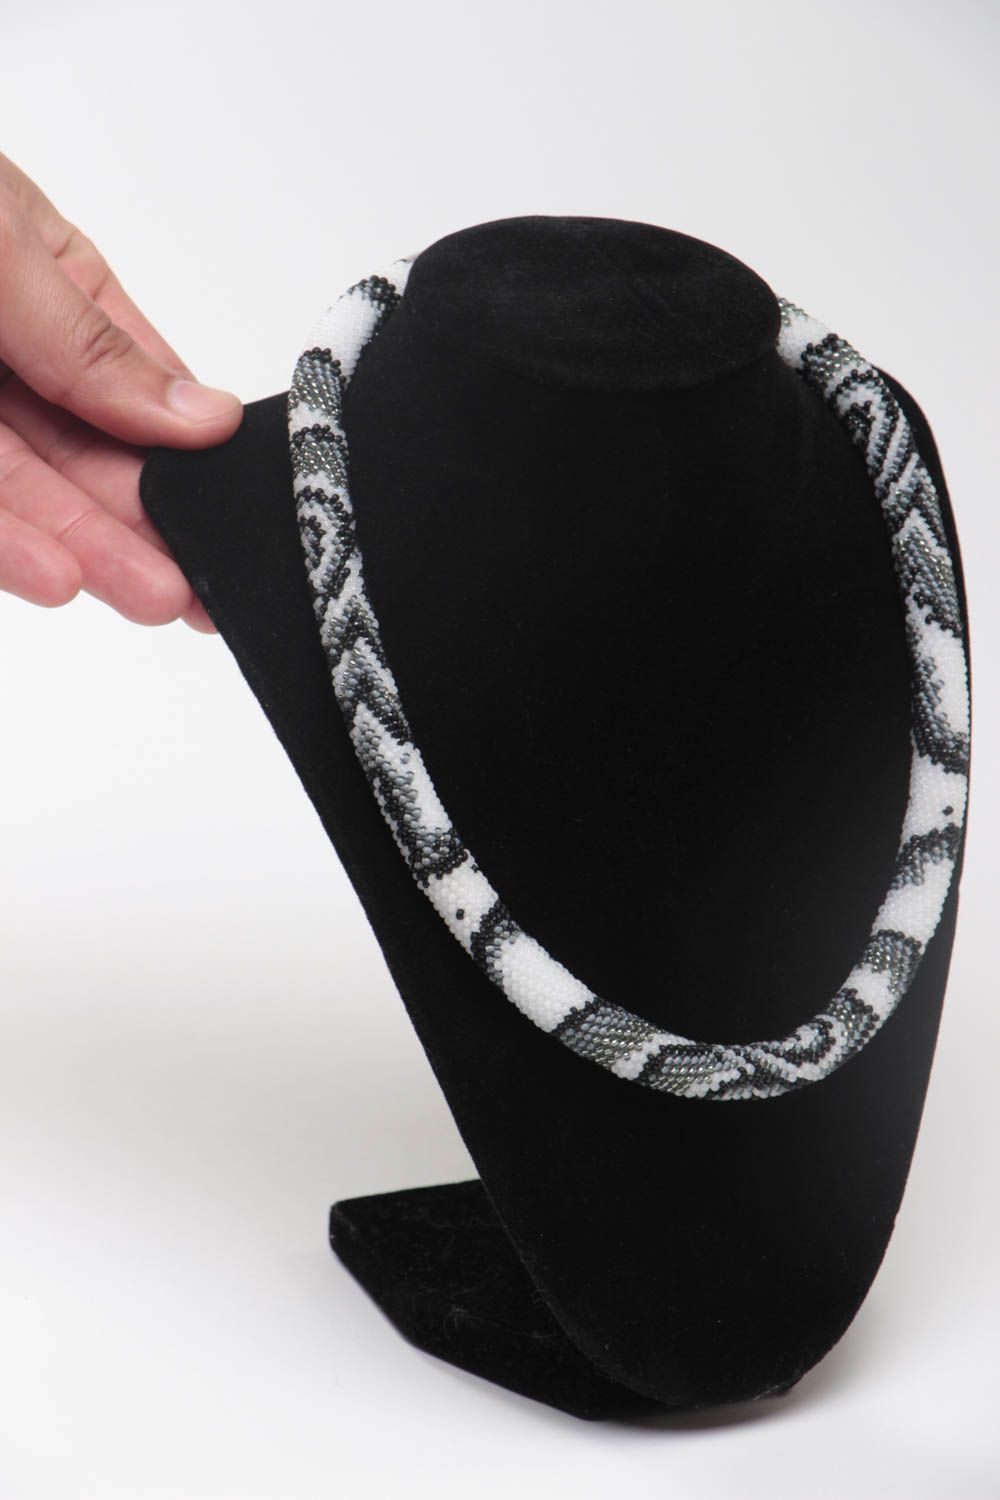 Черно белый жгут из бисера ожерелье на шею строгое женское украшение ручной работы фото 5